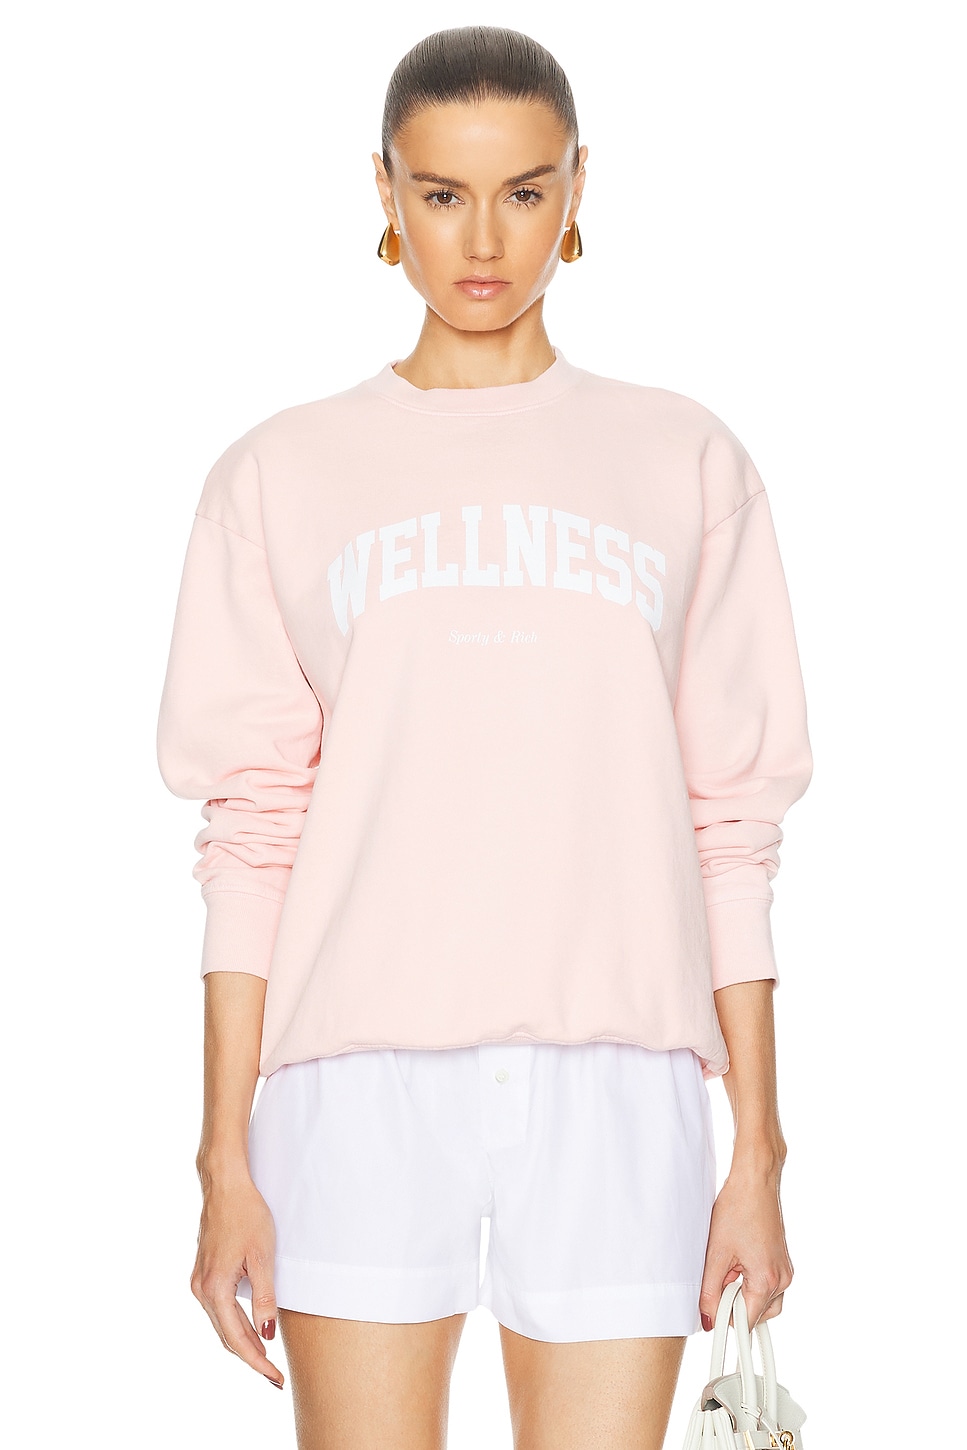 Wellness Ivy Crewneck Sweatshirt in Pink